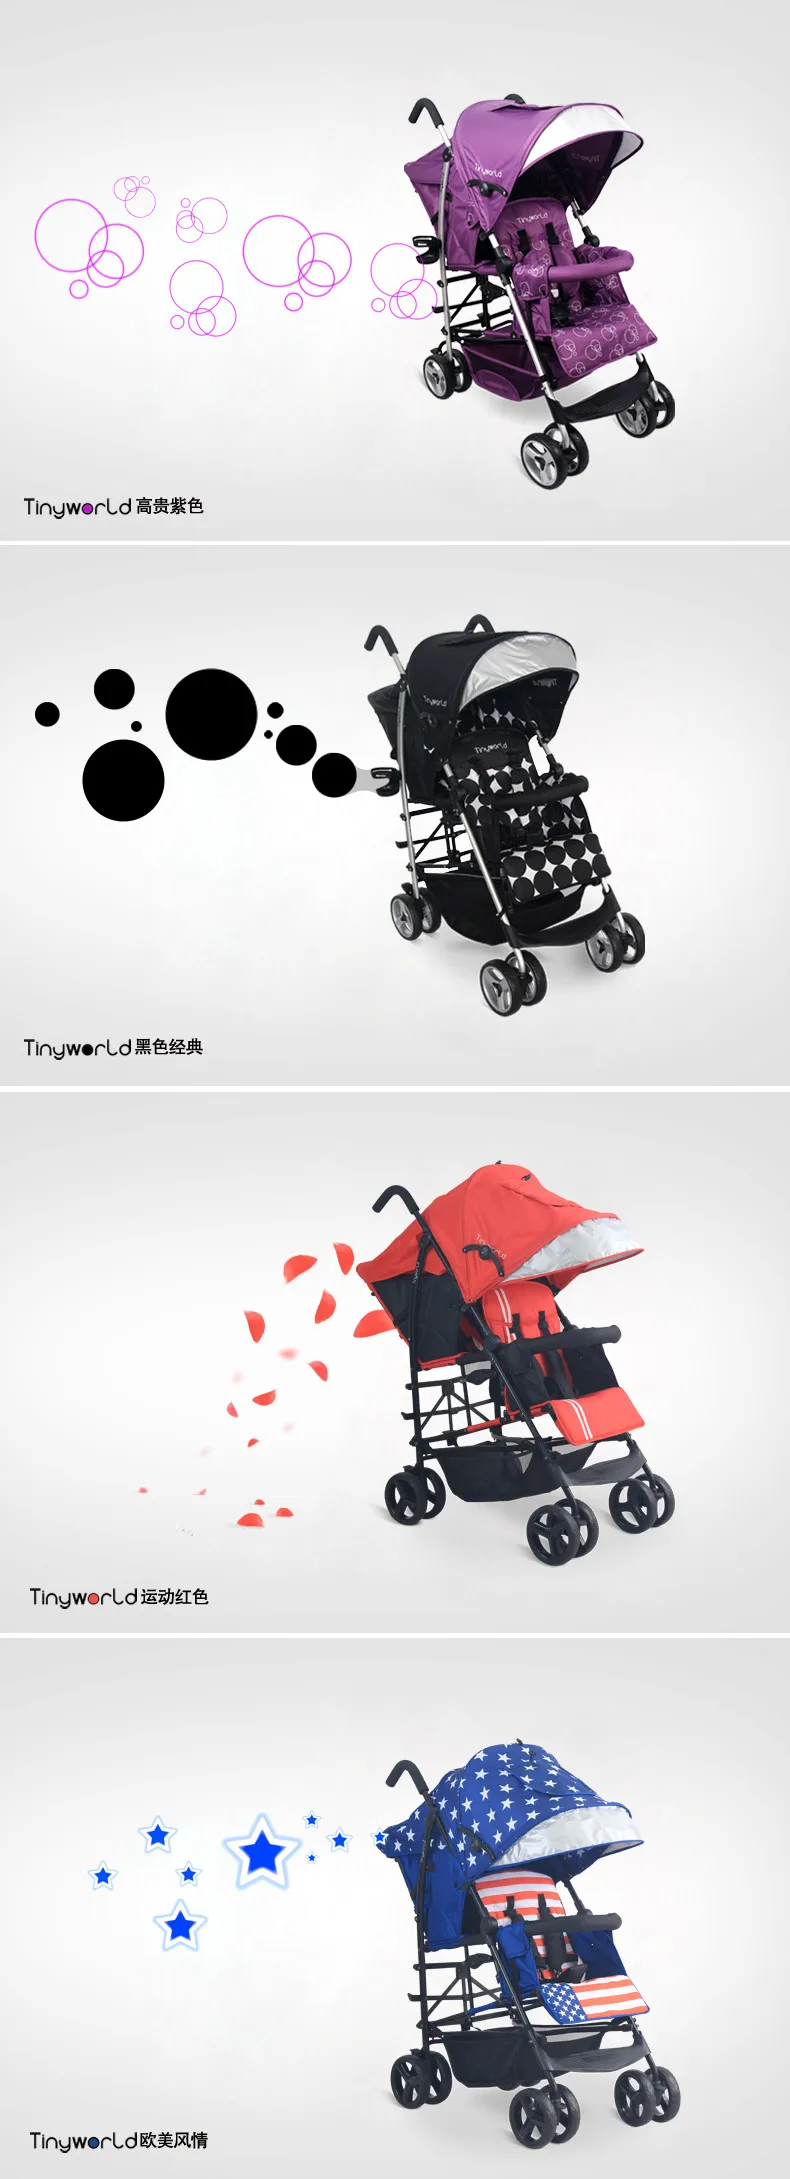 Светильник для коляски для близнецов, дорожный зонт, коляска Tinyworld для близнецов, светильник для детской коляски, складной двойной автомобиль для близнецов, детская коляска